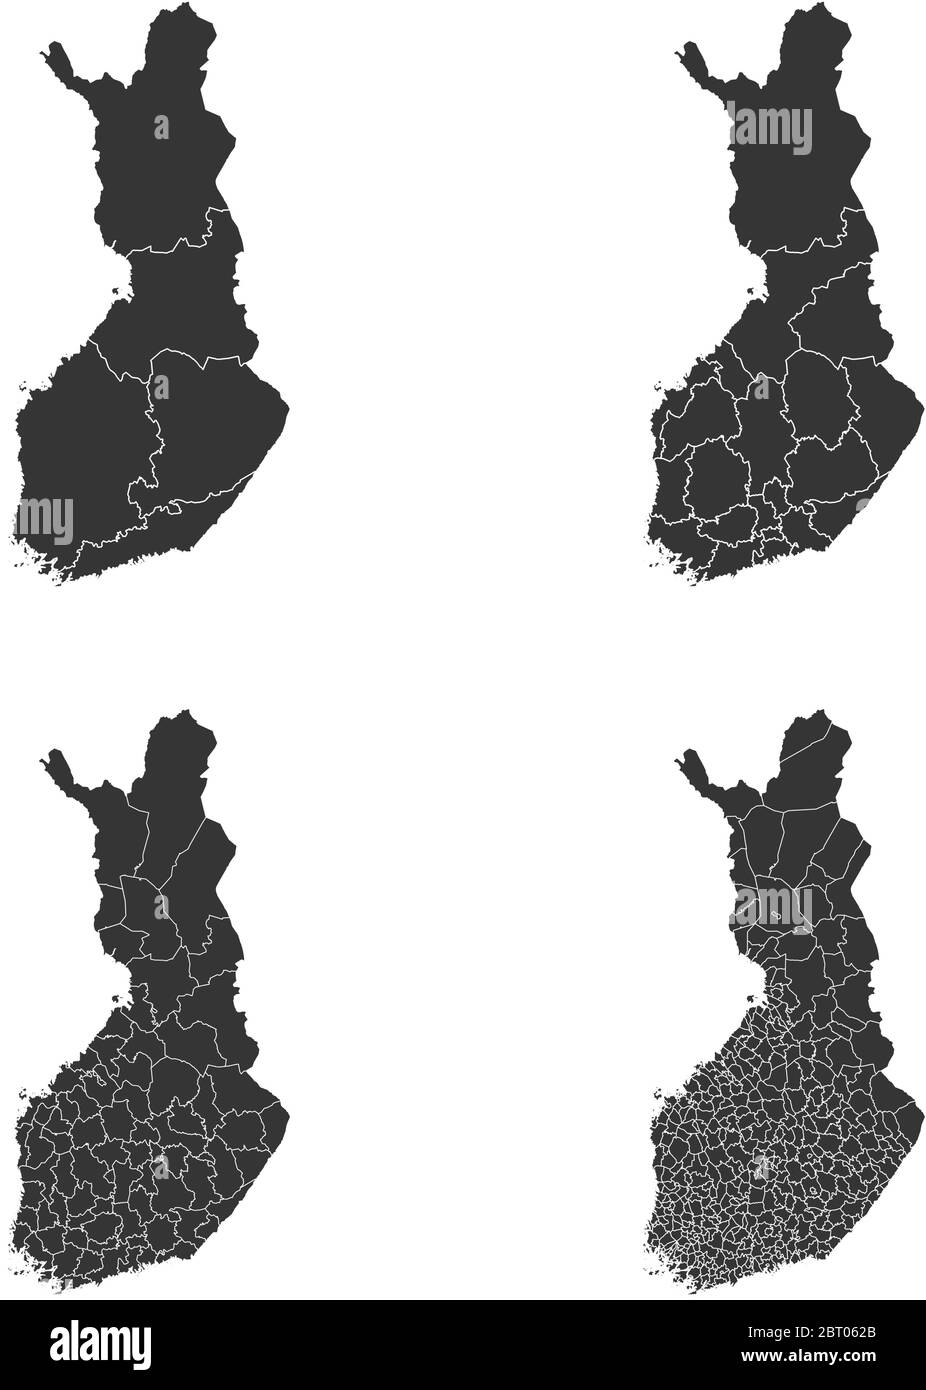 Cartes vectorielles de la Finlande avec régions administratives, municipalités, départements, frontières Illustration de Vecteur